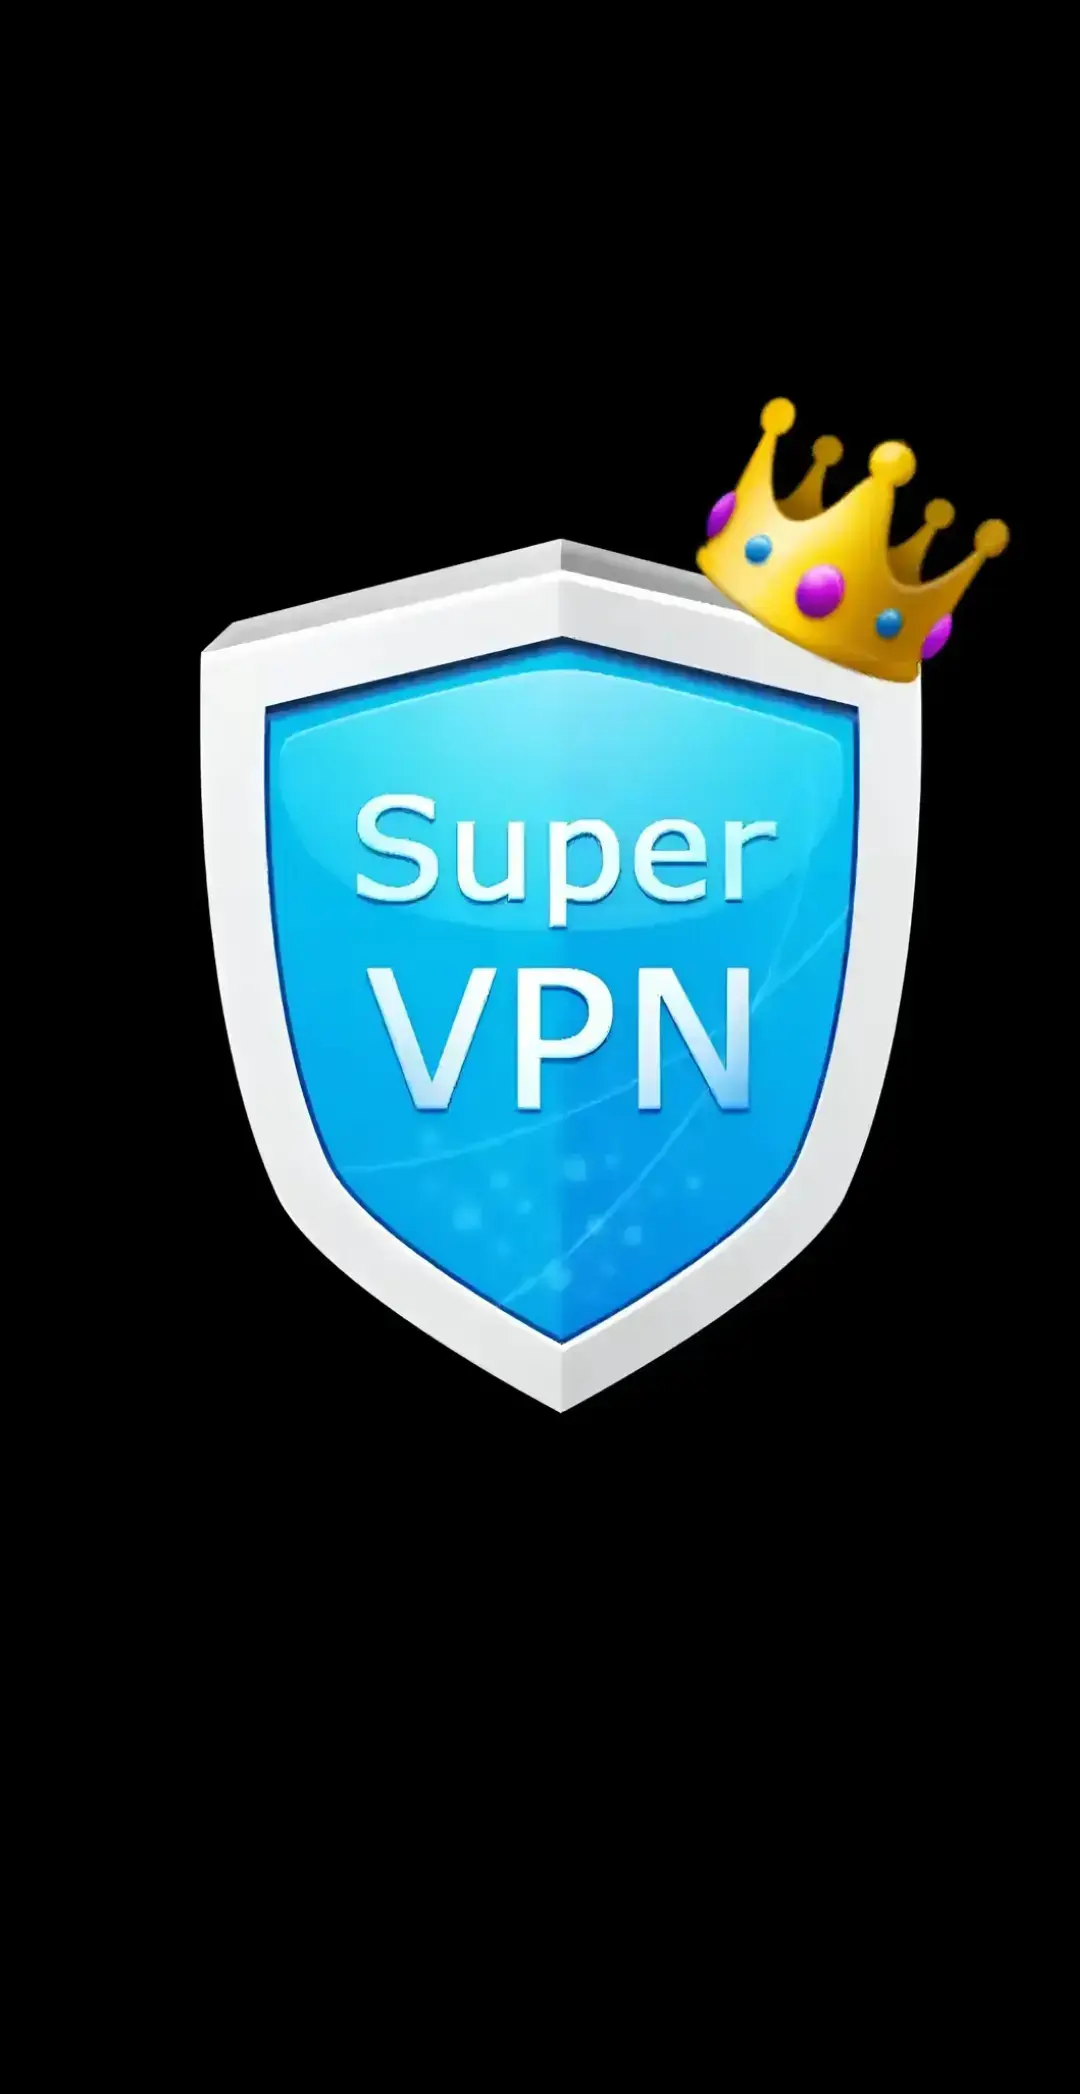 Brilliant 😁 VPN ont for her but chrromes😁🤣